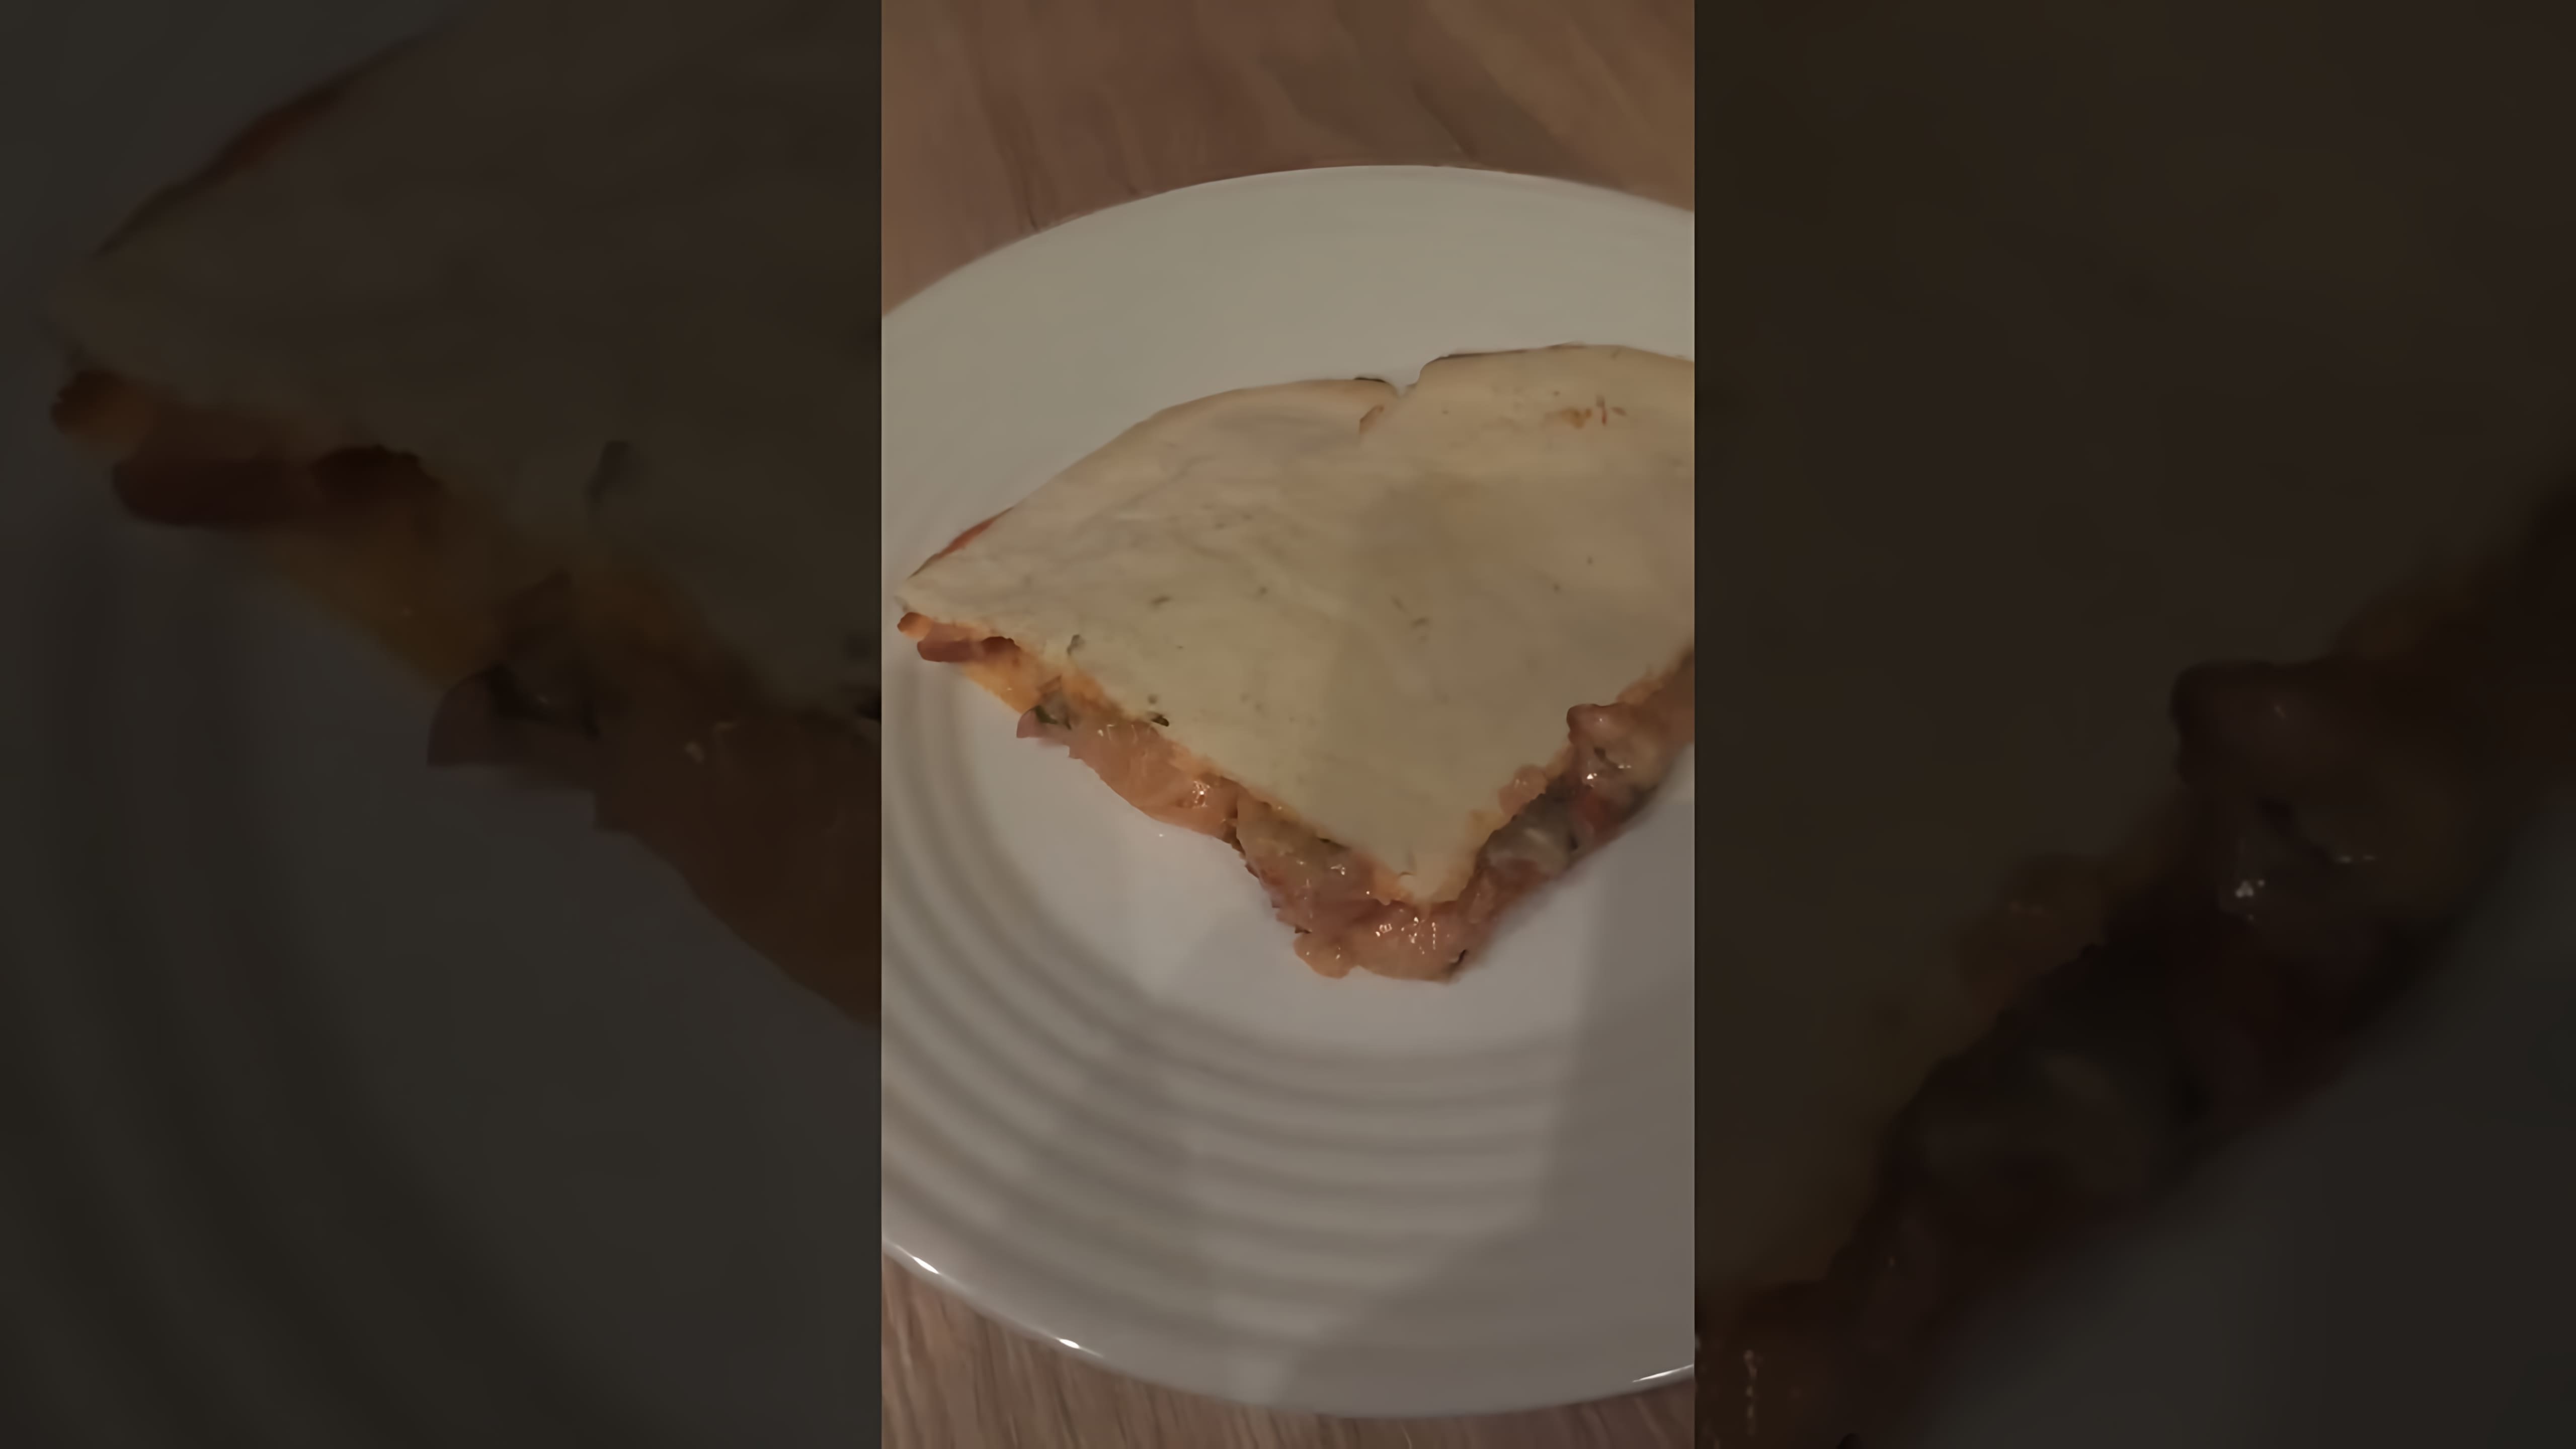 Видео: Не знаю что это пока был на работе решил сделать может пицца #Вкусно #быстро #приятного